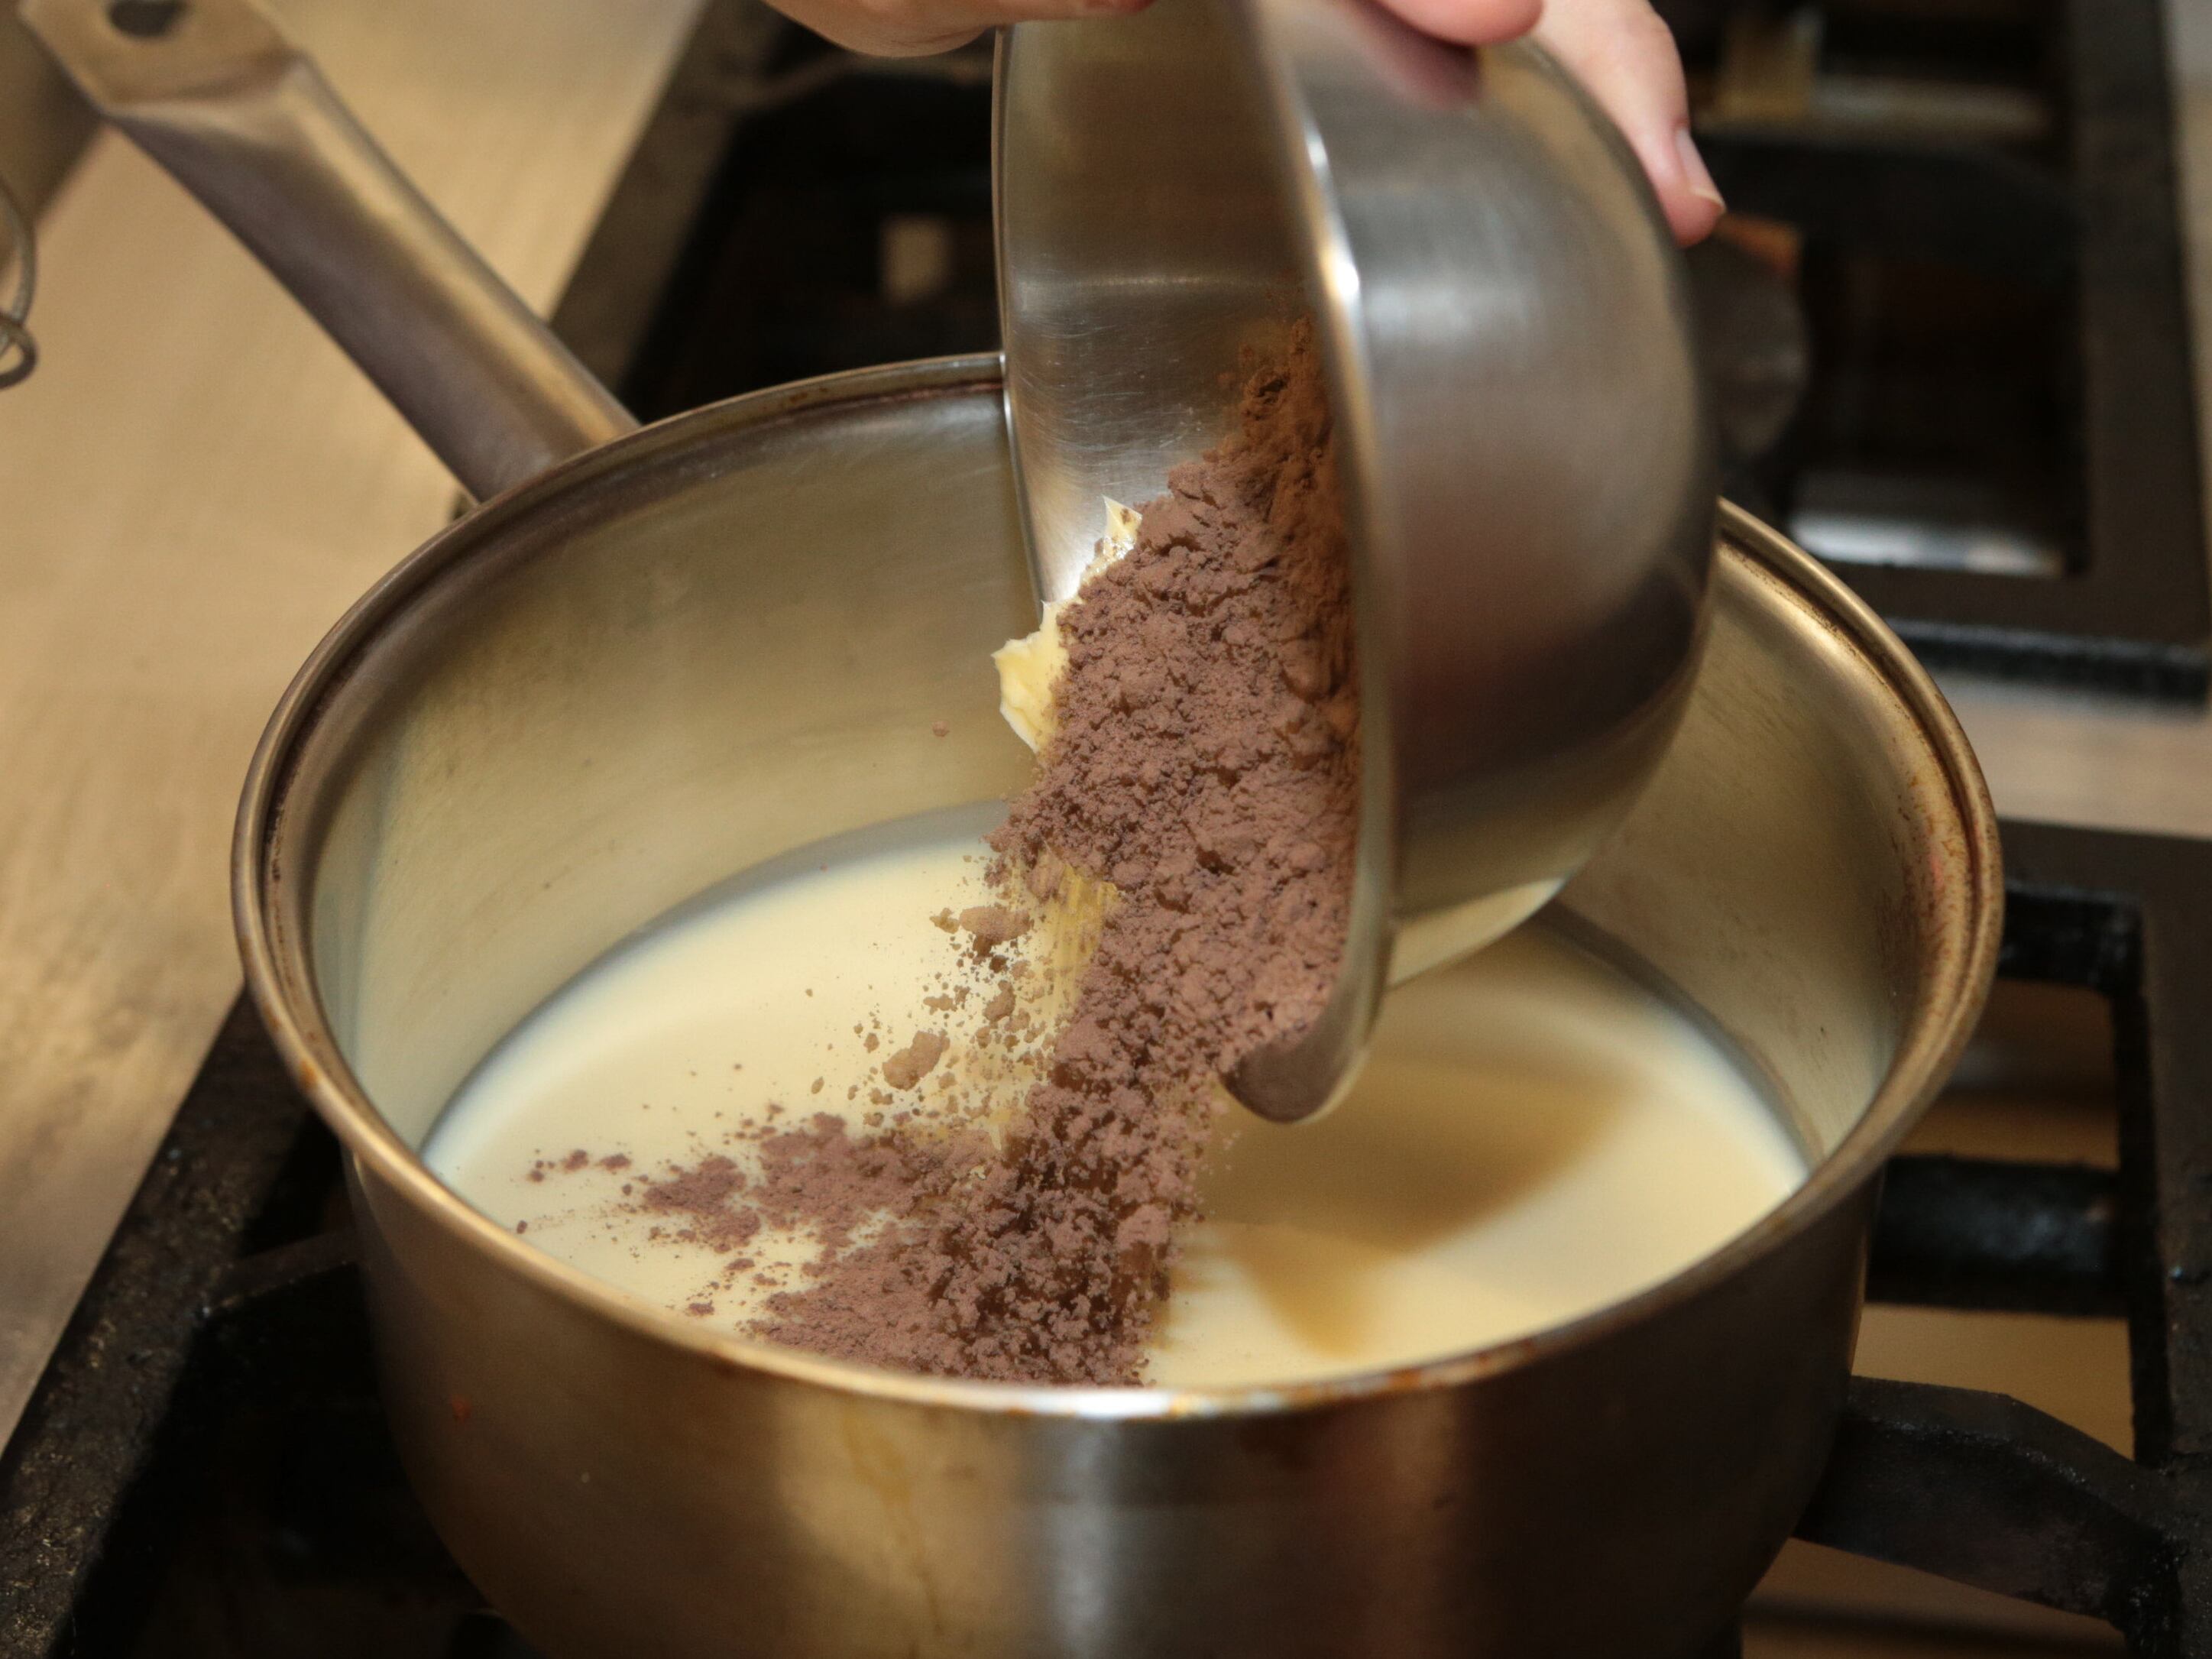 Para testar oito marcas de leite condensado, os jurados prepararam receitas de brigadeiro